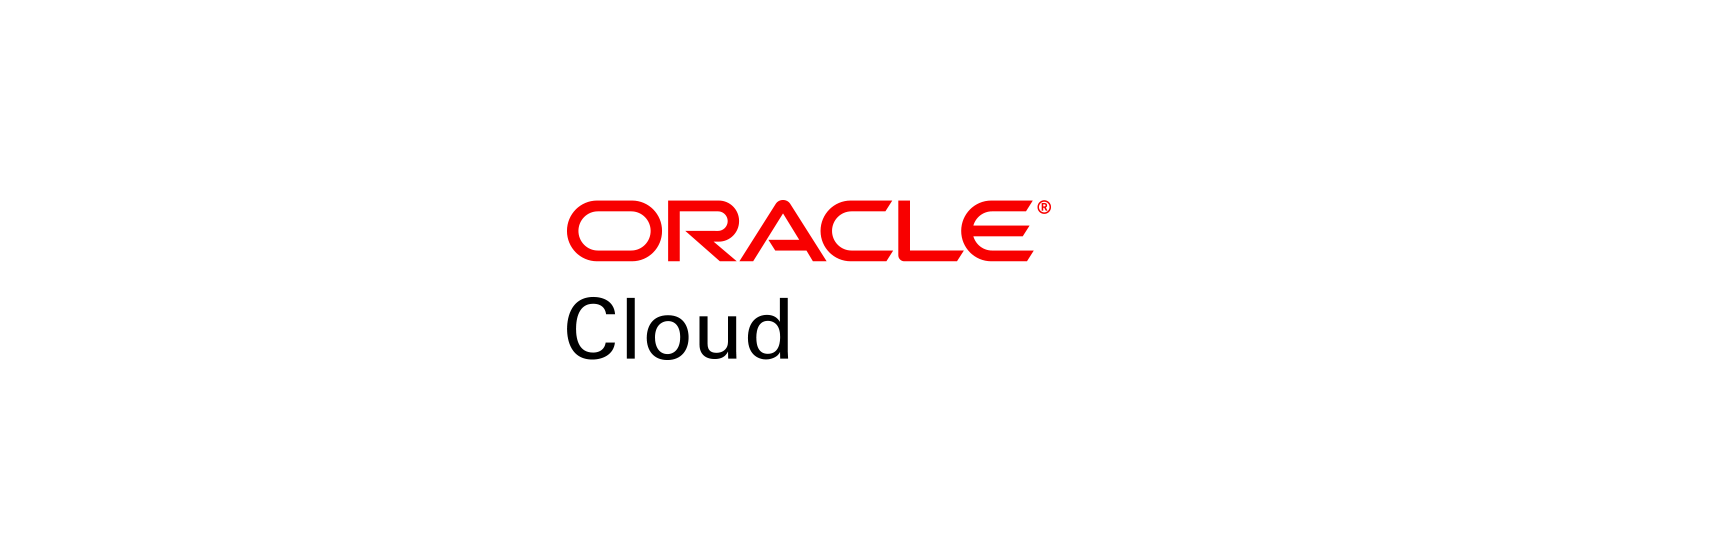 Google Cloud Logo - Oracle Brand | Logos